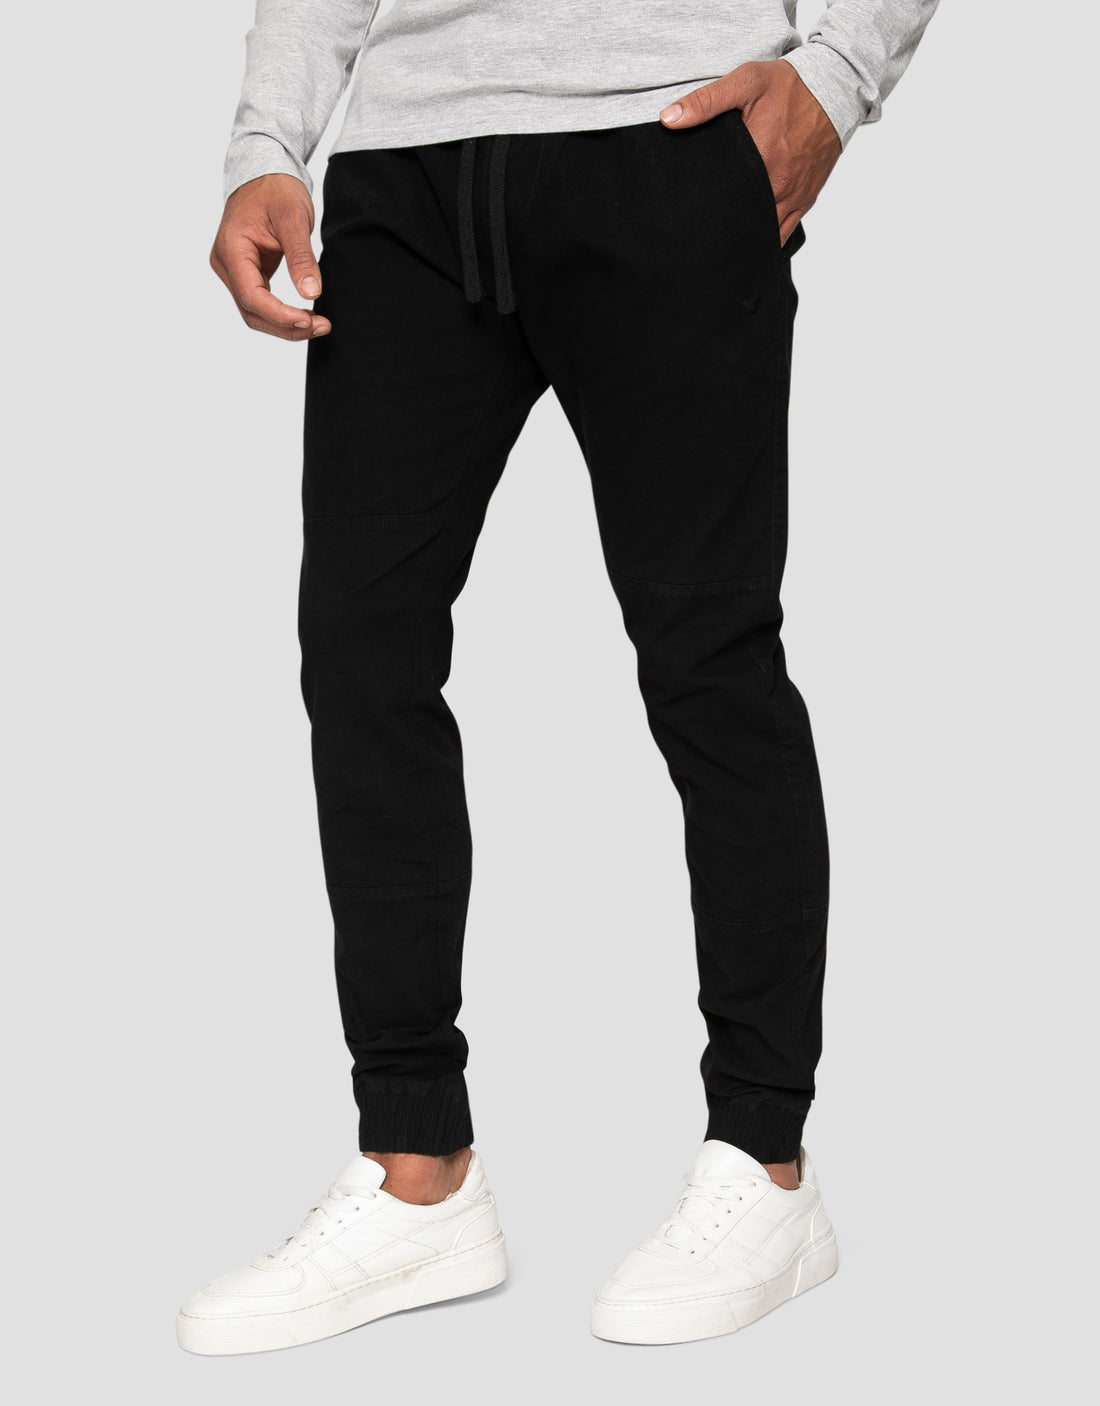 Joggers Solid Pants Men Cotton Elastic PU27 | Mens pants casual, Men  casual, Mens trousers casual